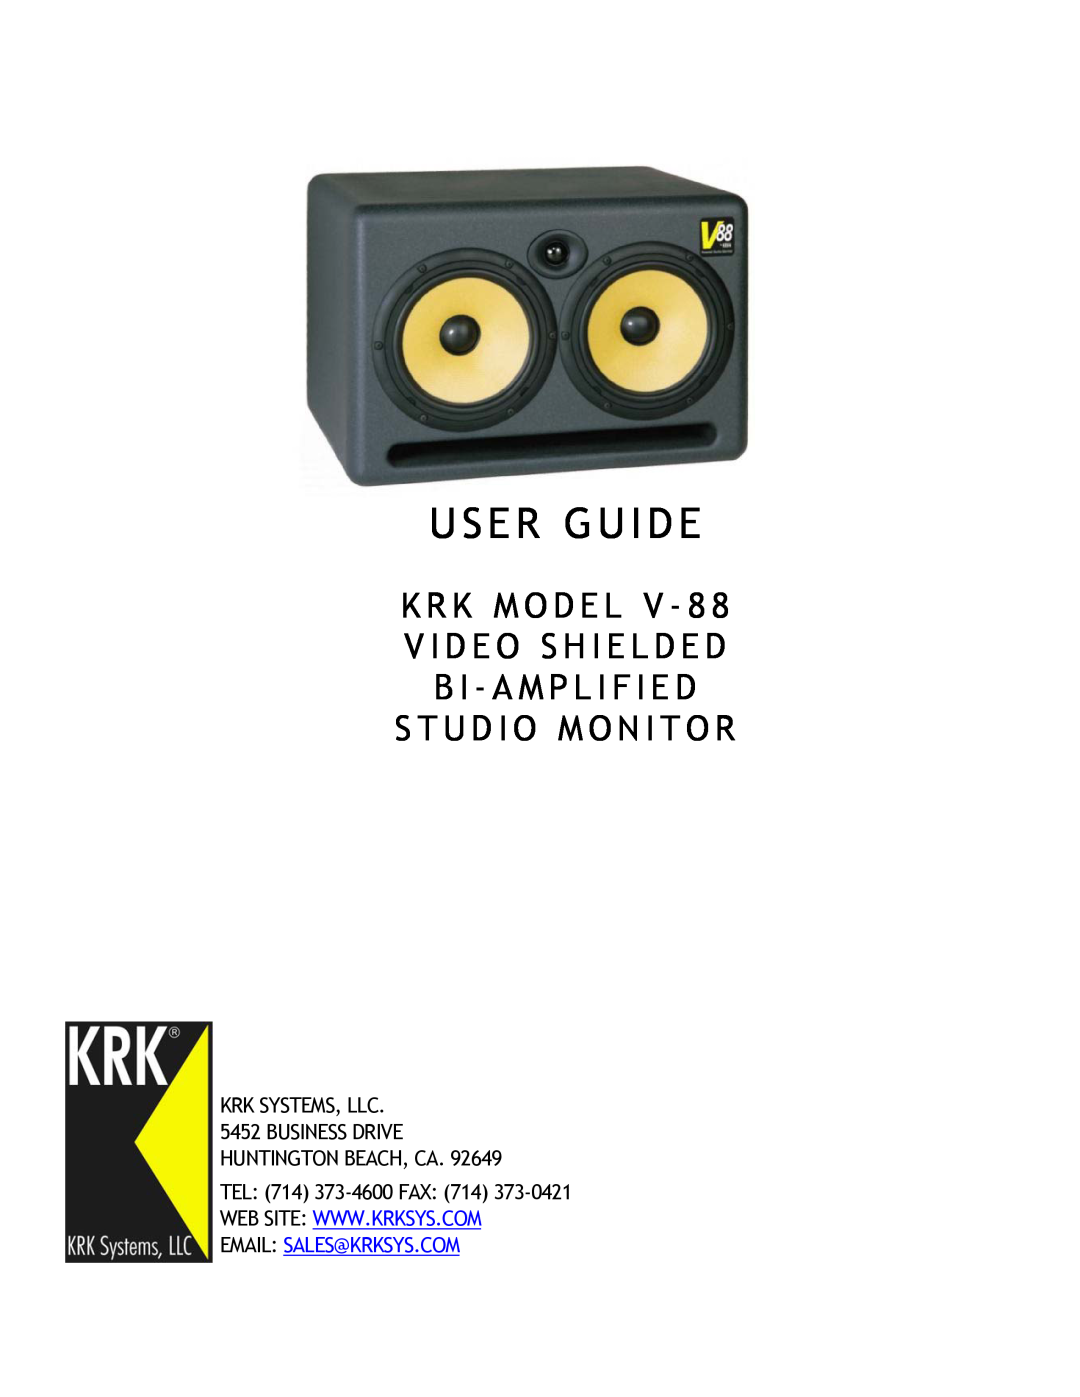 KRK V-88 manual User Guide, K R K M O D E L V - 8 V I D E O S H I E L D E D, Krk Systems, Llc, TEL 714 373-4600FAX 